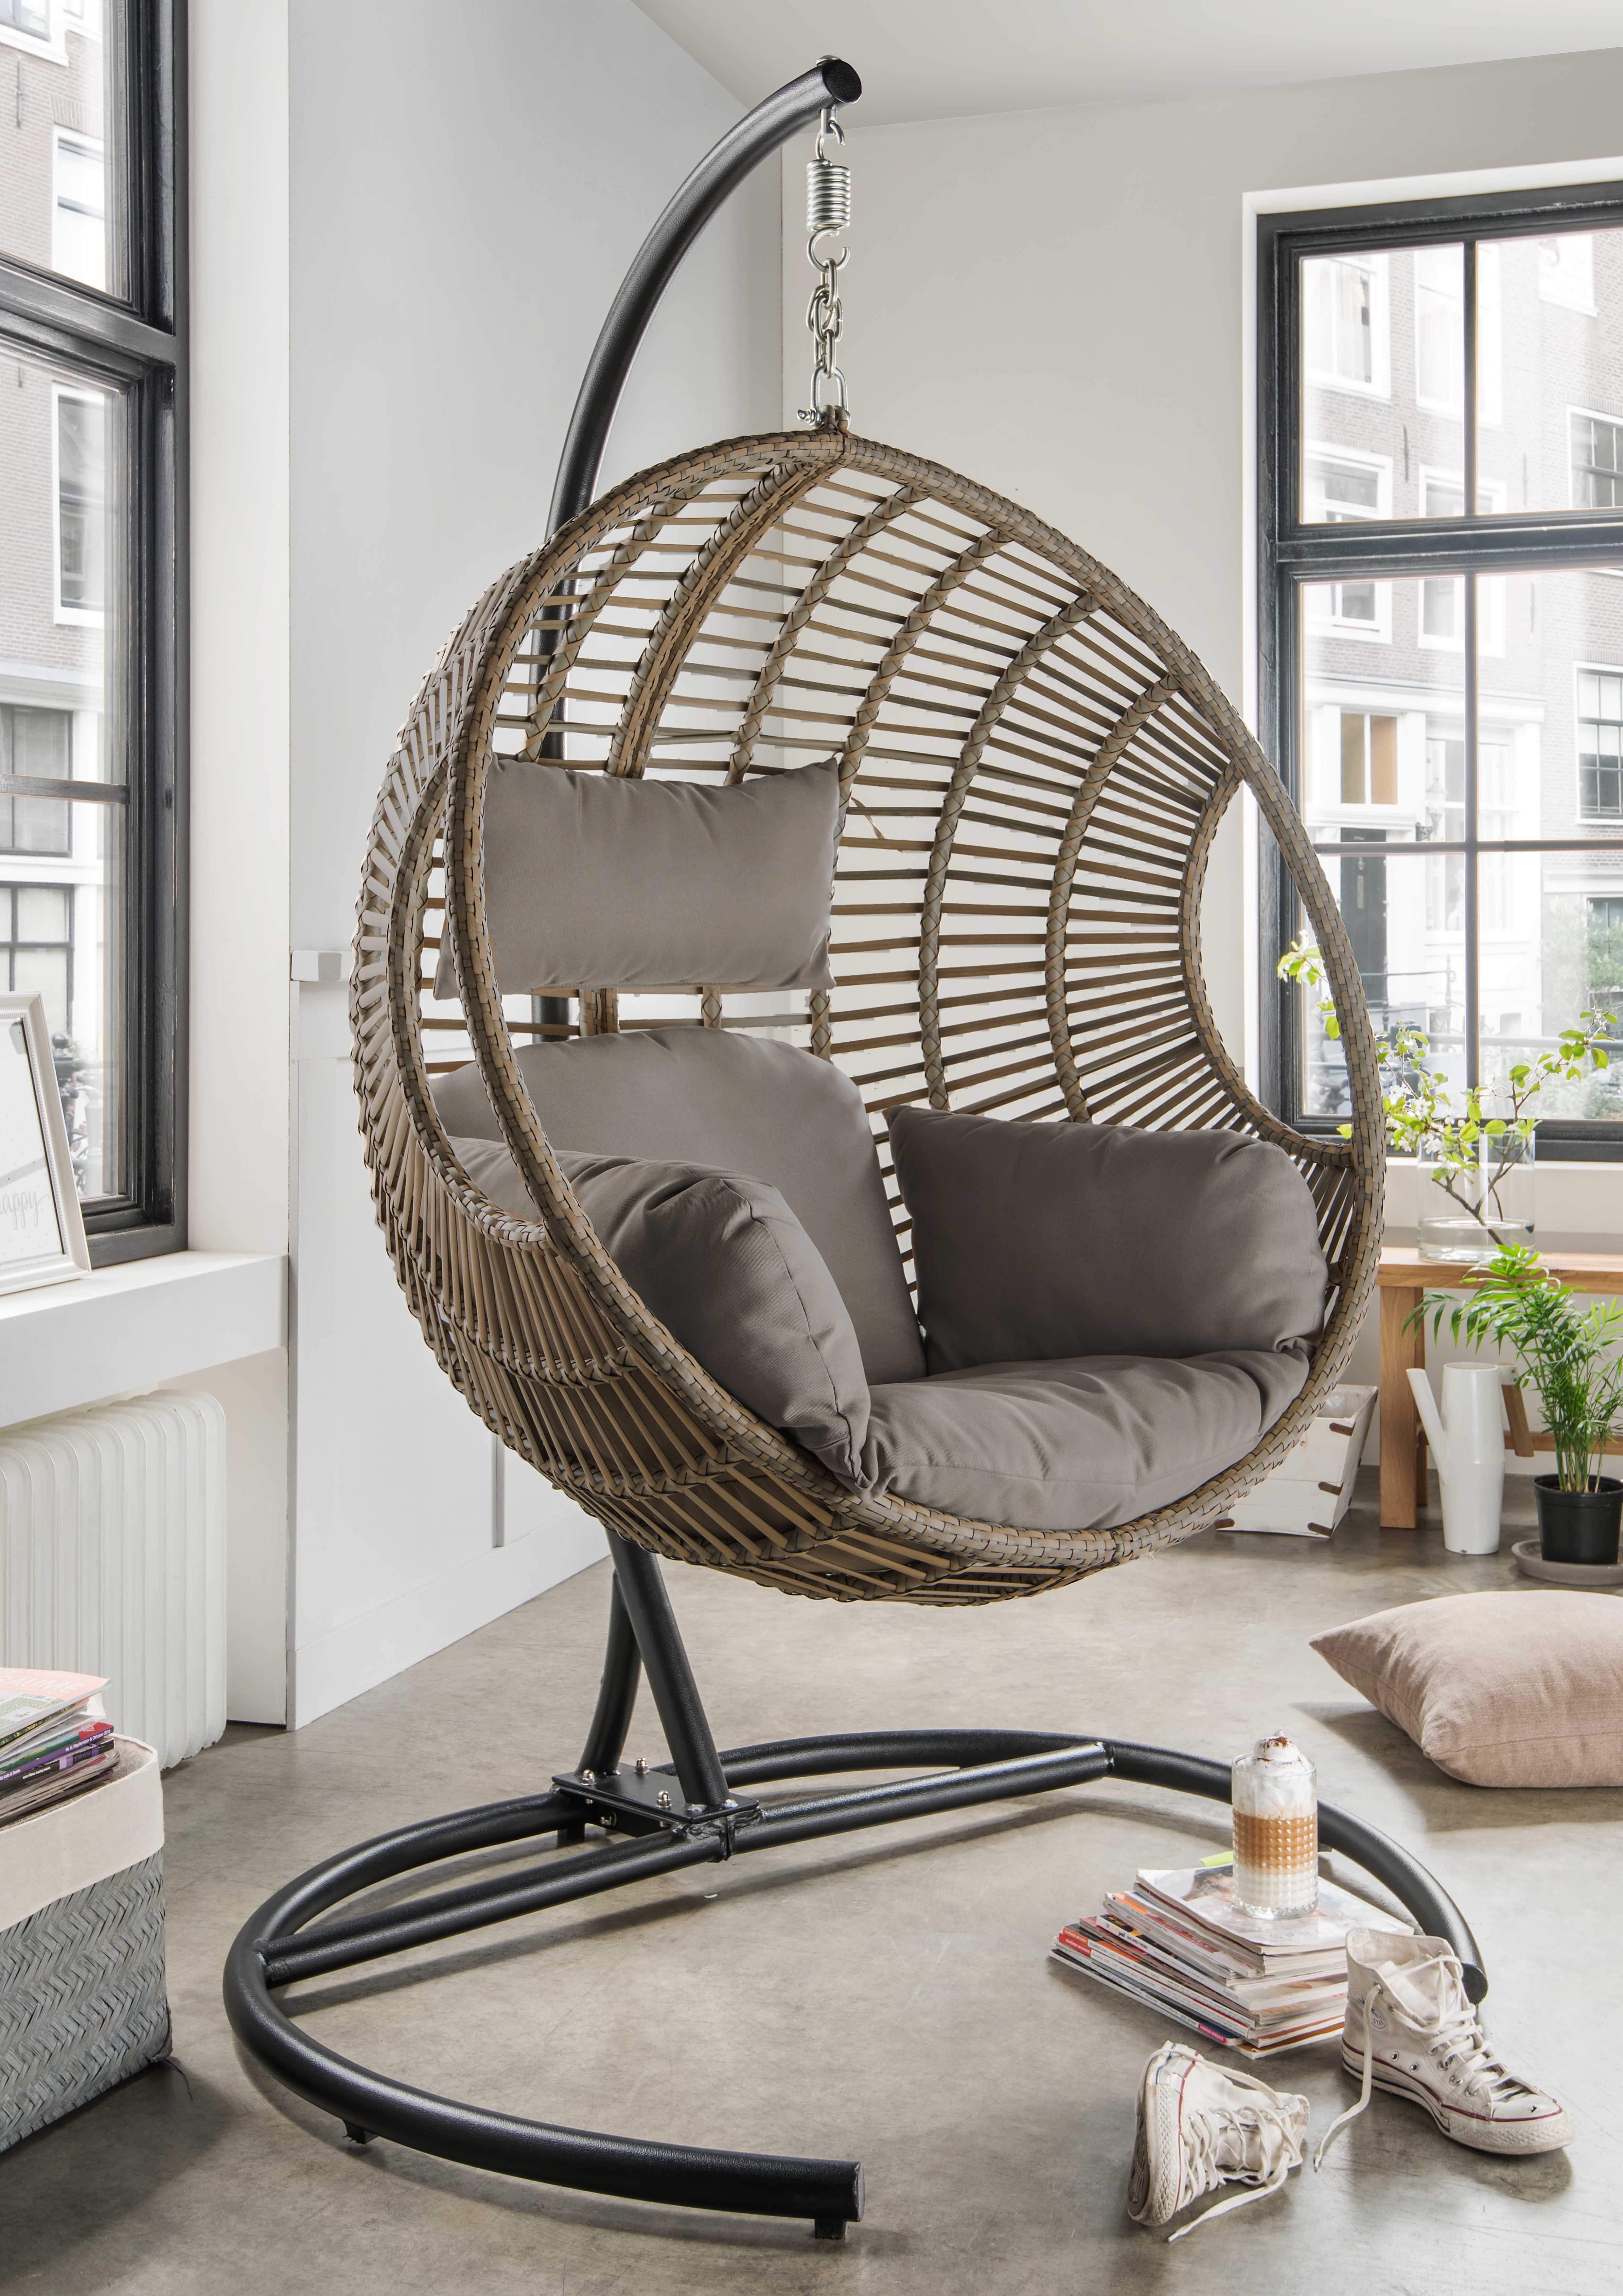 destiny hangstoel coco de luxe ii incl. frame, zit- en rugkussen, belastbaar tot 110 kg grijs